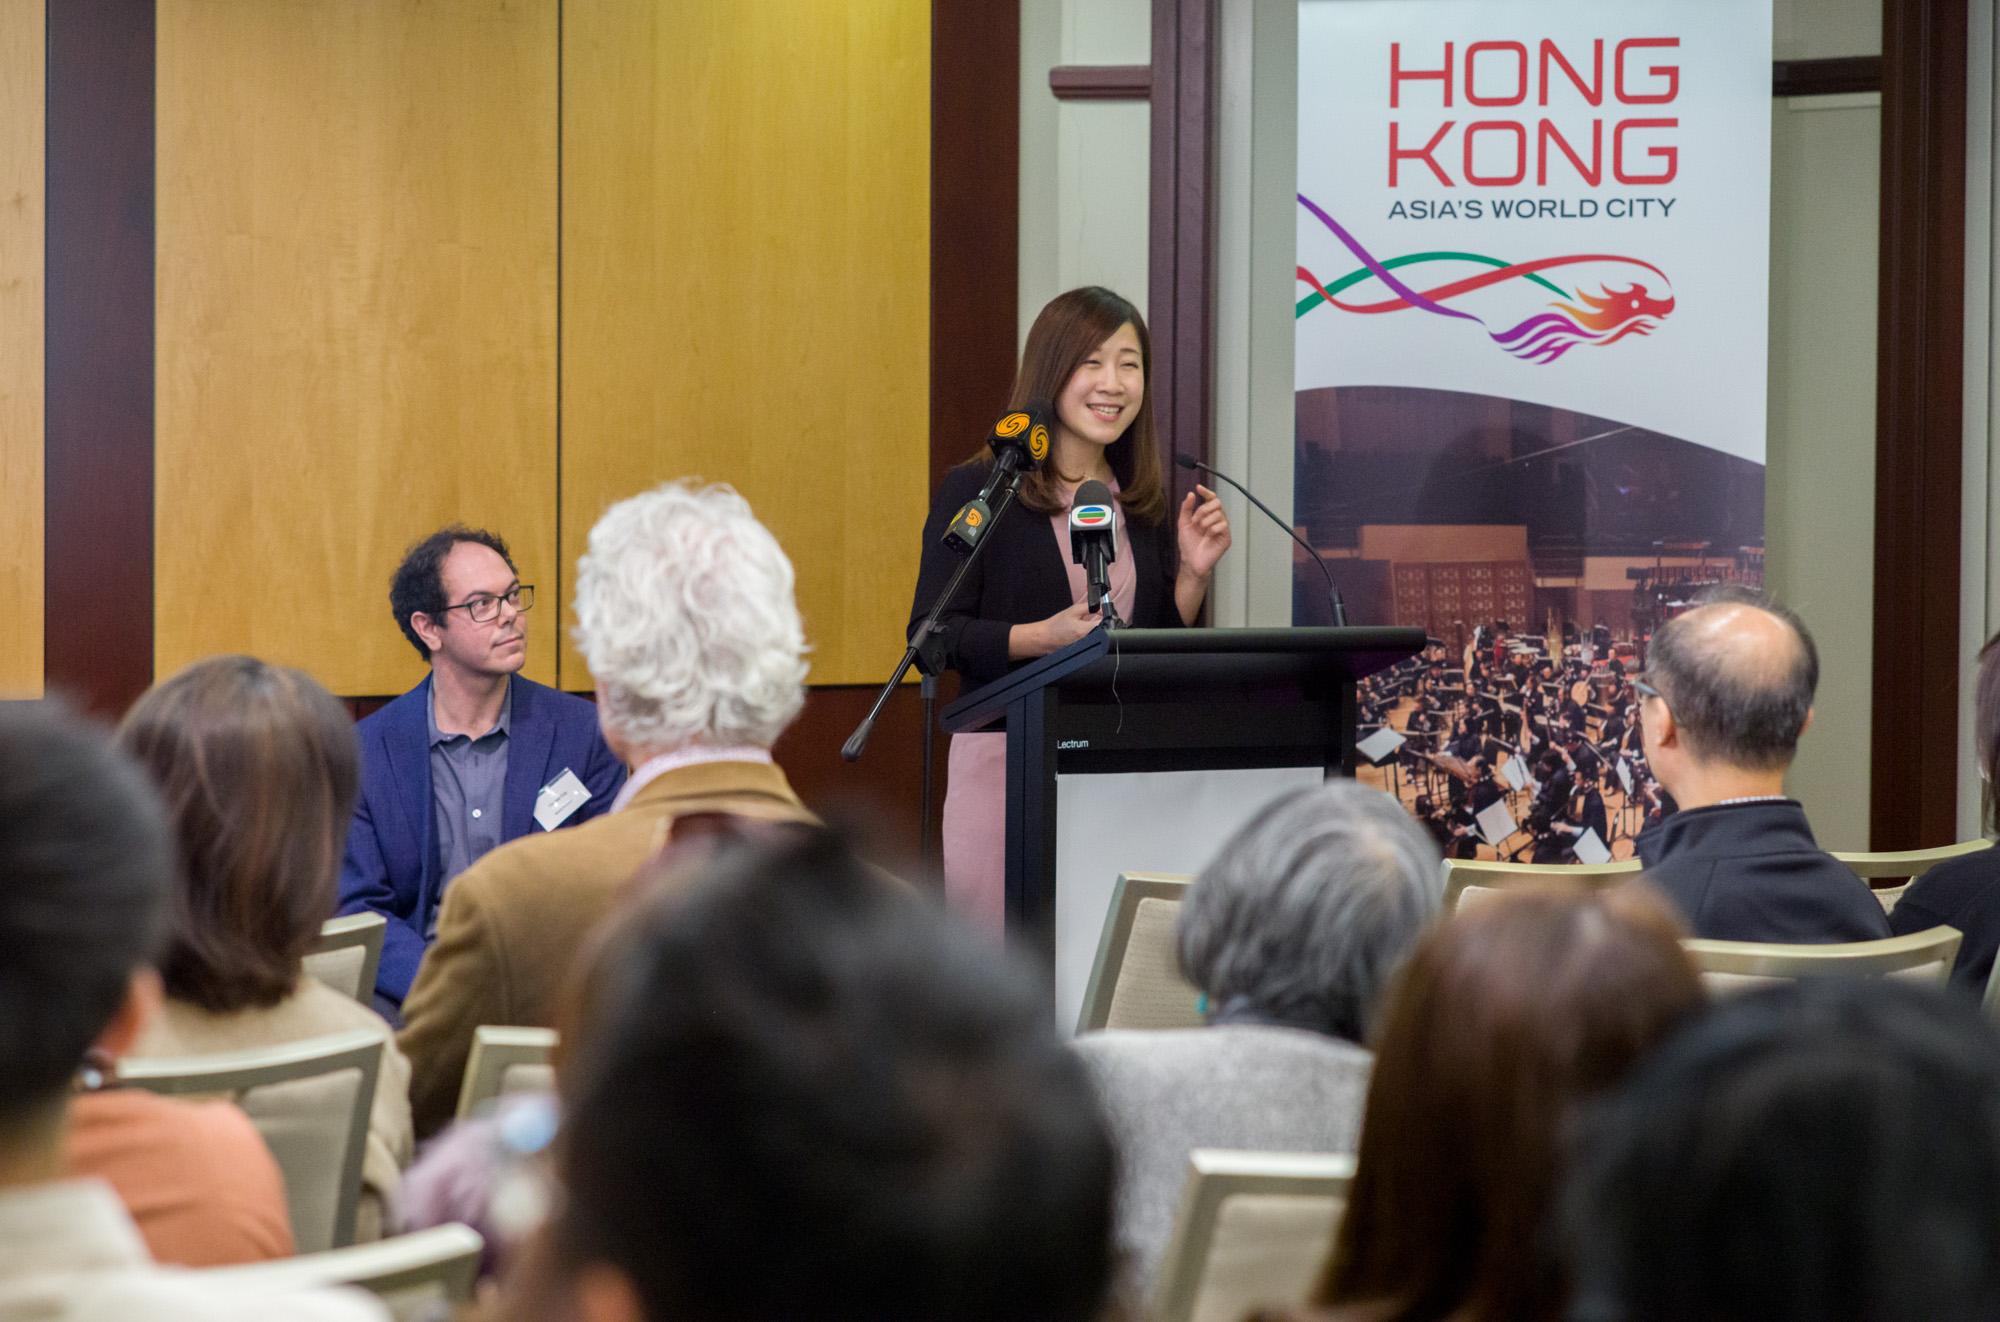 香港駐悉尼經濟貿易辦事處處長林美儀今日（六月十三日）在澳洲悉尼舉辦的「藝術論壇 x 交流酒會」致歡迎辭，介紹香港文化藝術的最新發展，以及香港作為中外文化藝術交流中心的優勢。